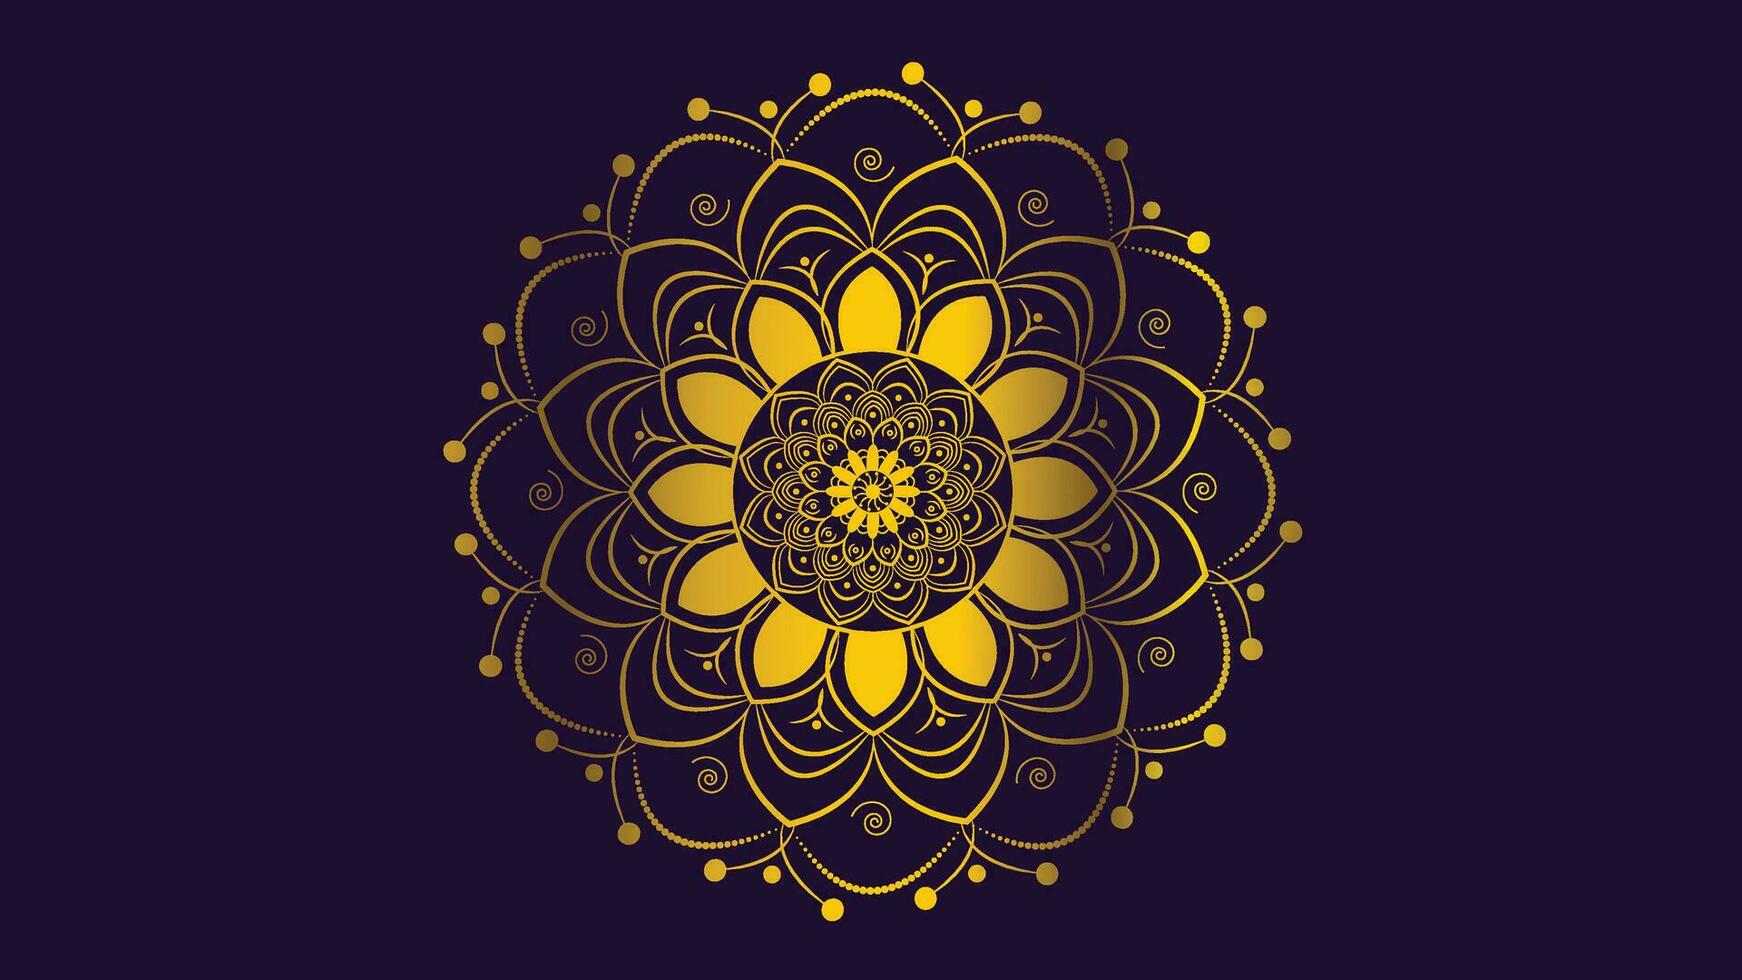 abstrakt mandala i gyllene Färg lutning skugga i mörk lila bakgrund. detta kan vara Begagnade som en baner eller ornament för din festival projekt. vektor